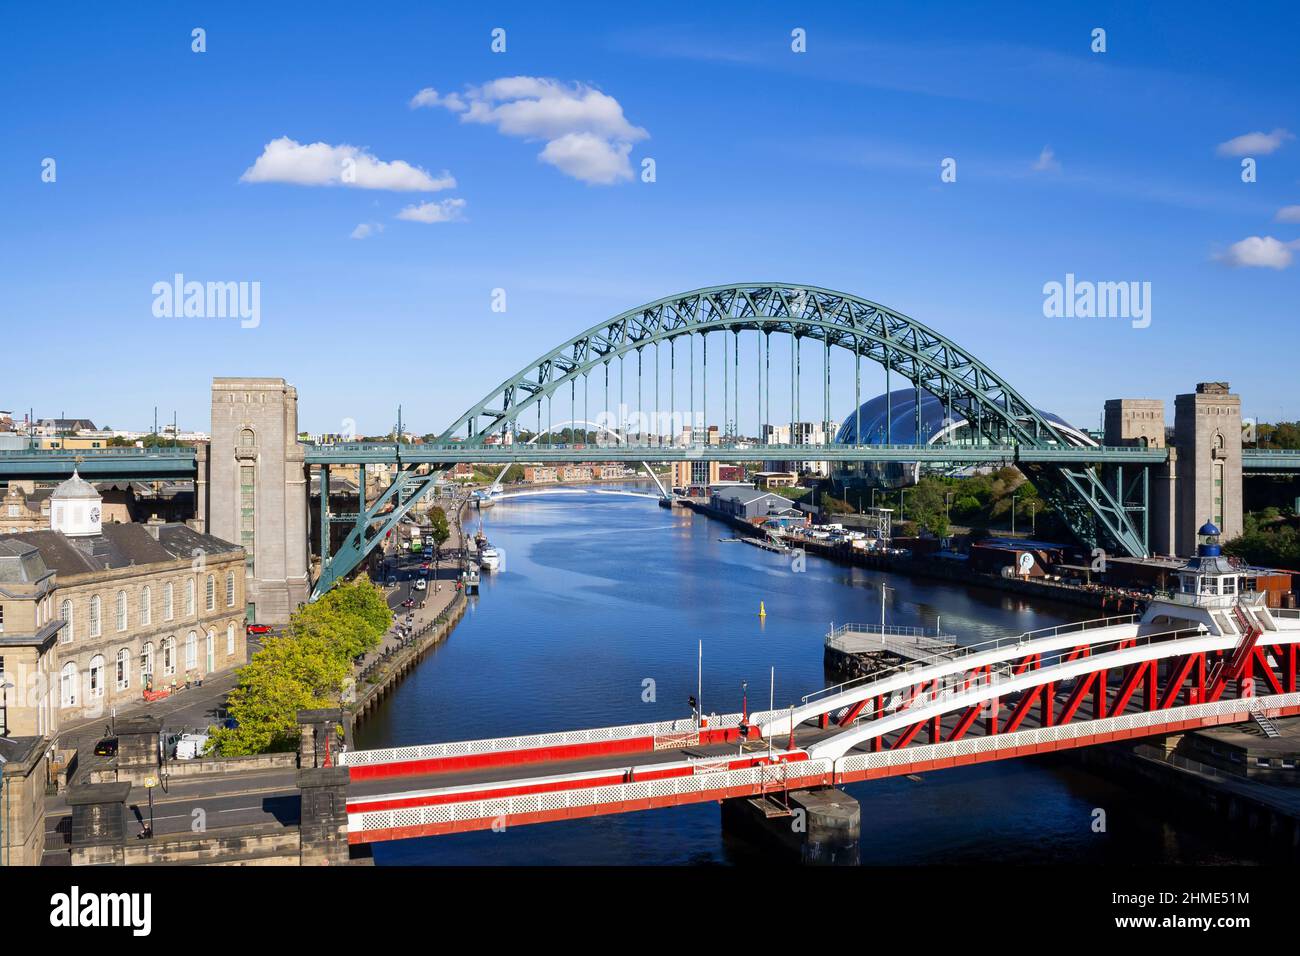 Vue sur les célèbres ponts de Newcastle enjambant la rivière Tyne, avec le bâtiment emblématique de Sage Gateshead en arrière-plan Banque D'Images